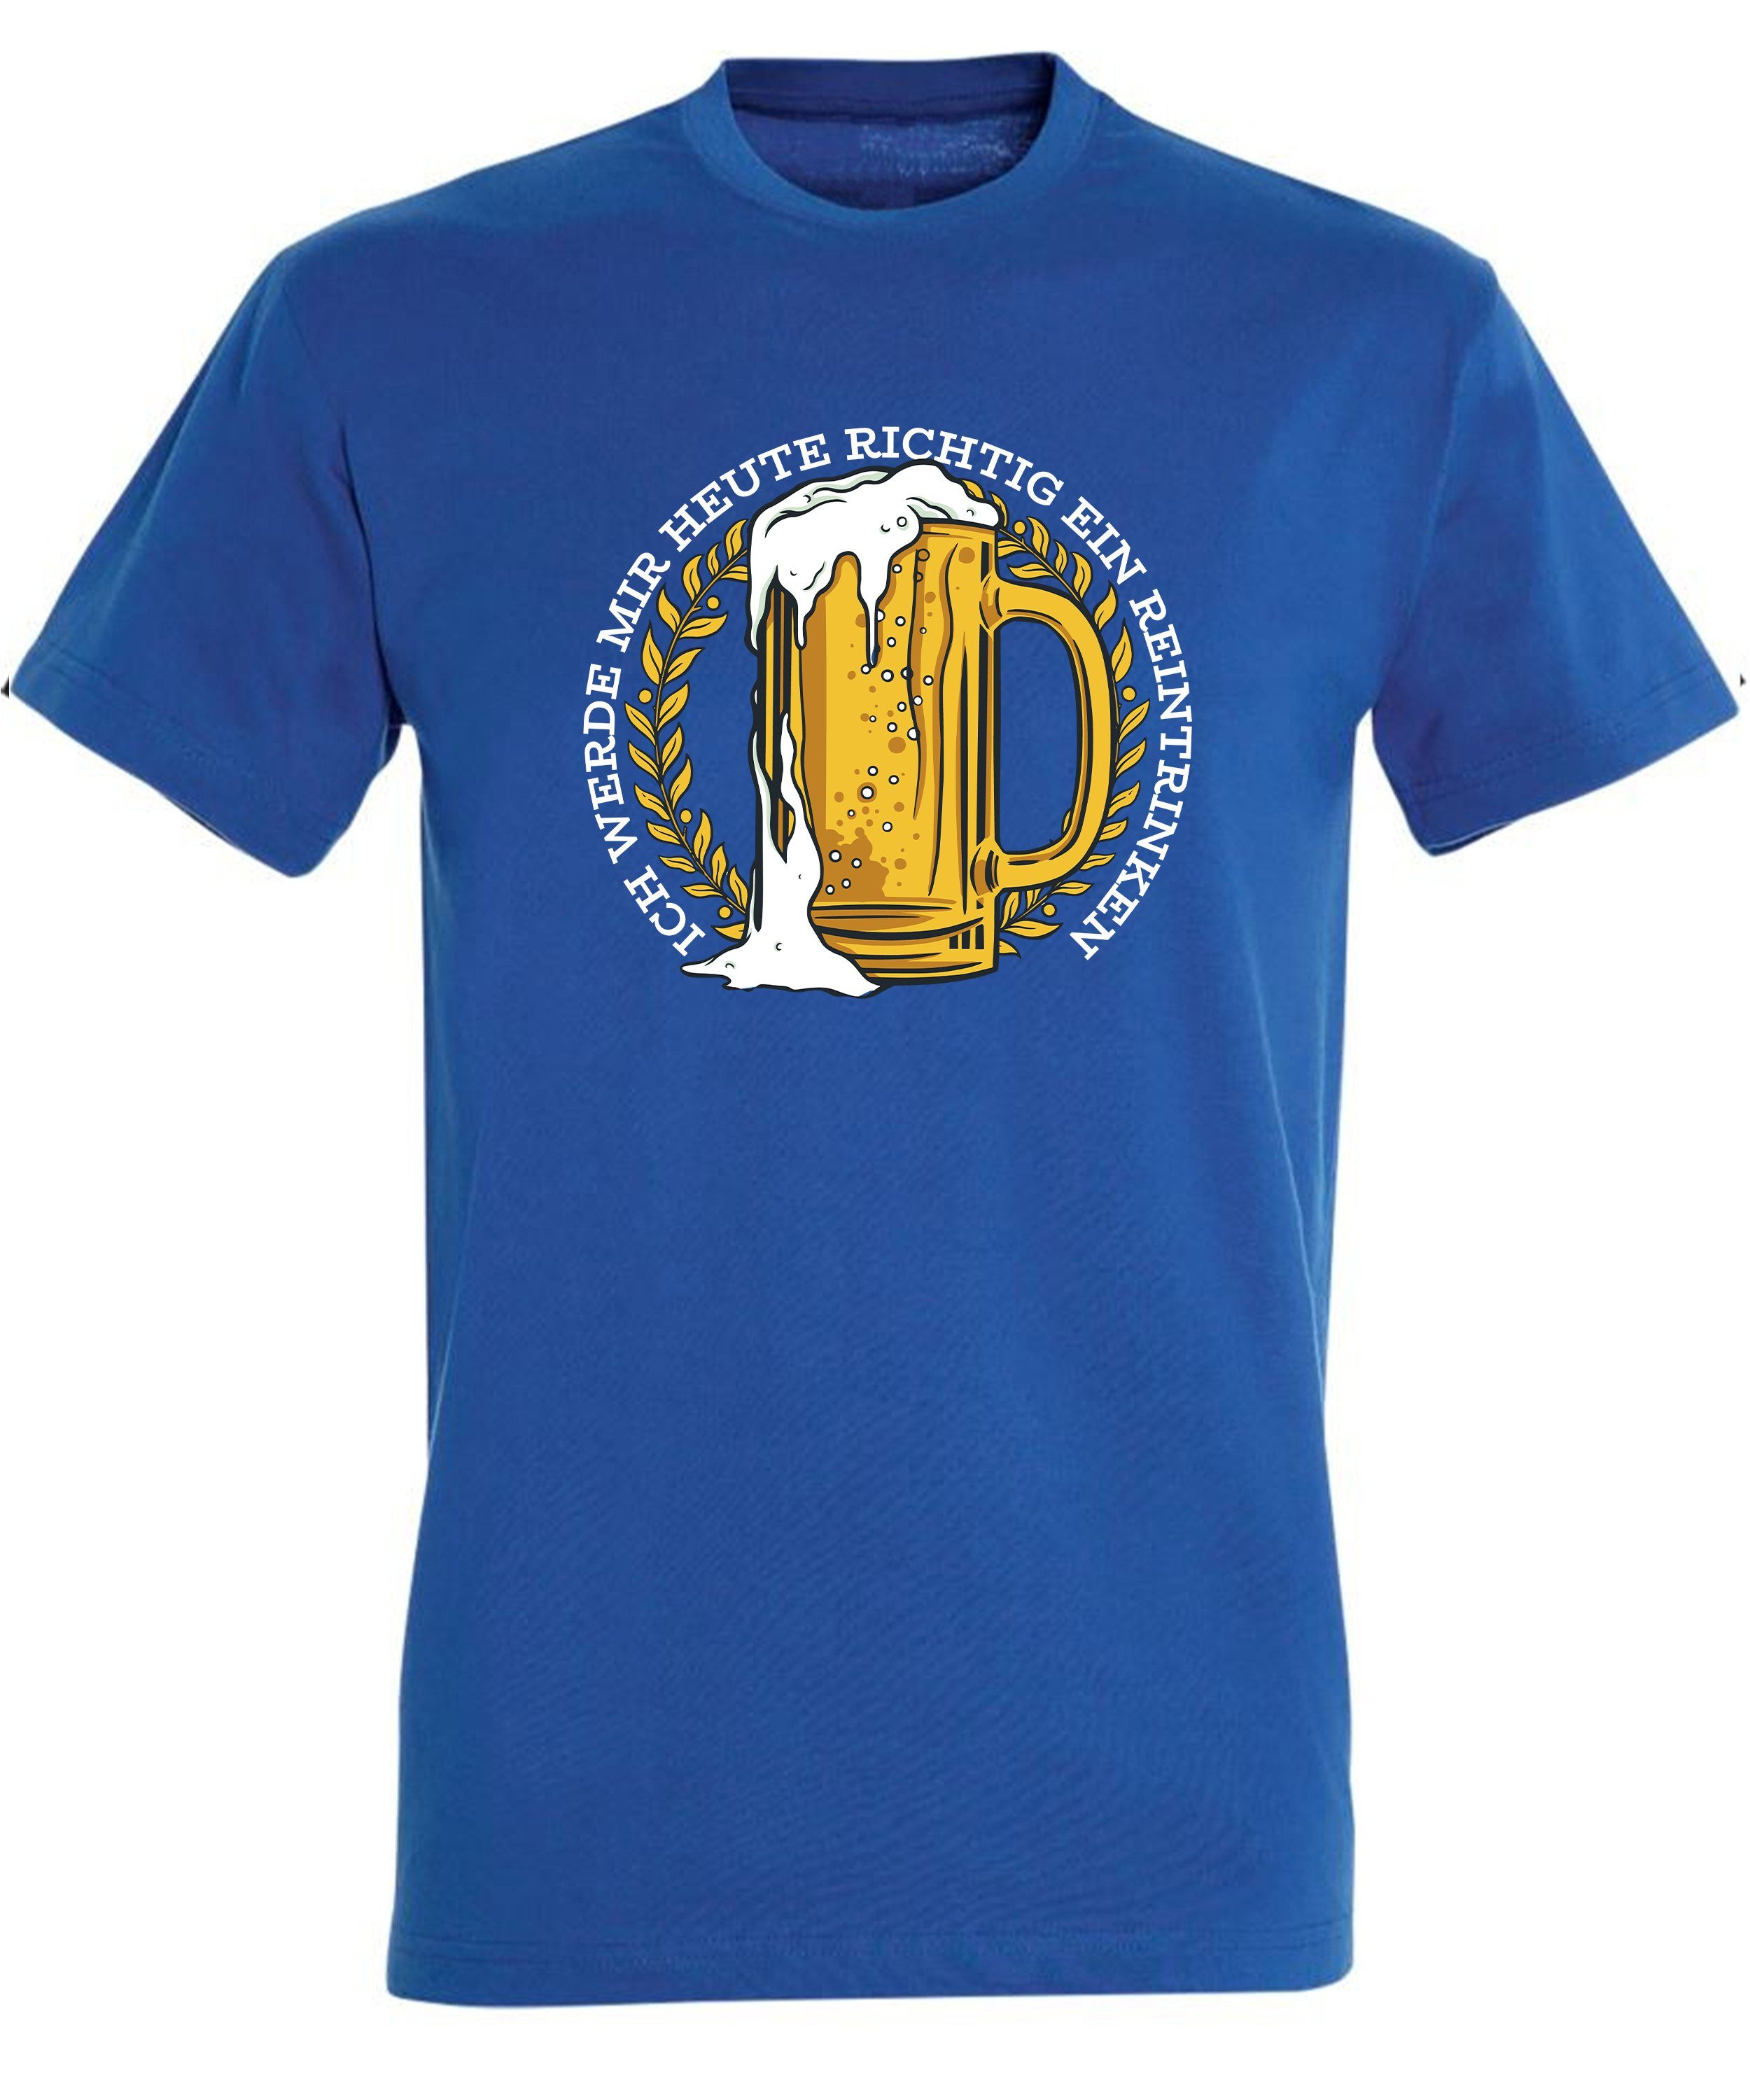 Mass T-Shirt Fit, royal Bier blau i311 MyDesign24 Regular Herren Aufdruck Oktoberfest - Shirt Fun mit Print mit Spruch Baumwollshirt Trinkshirt